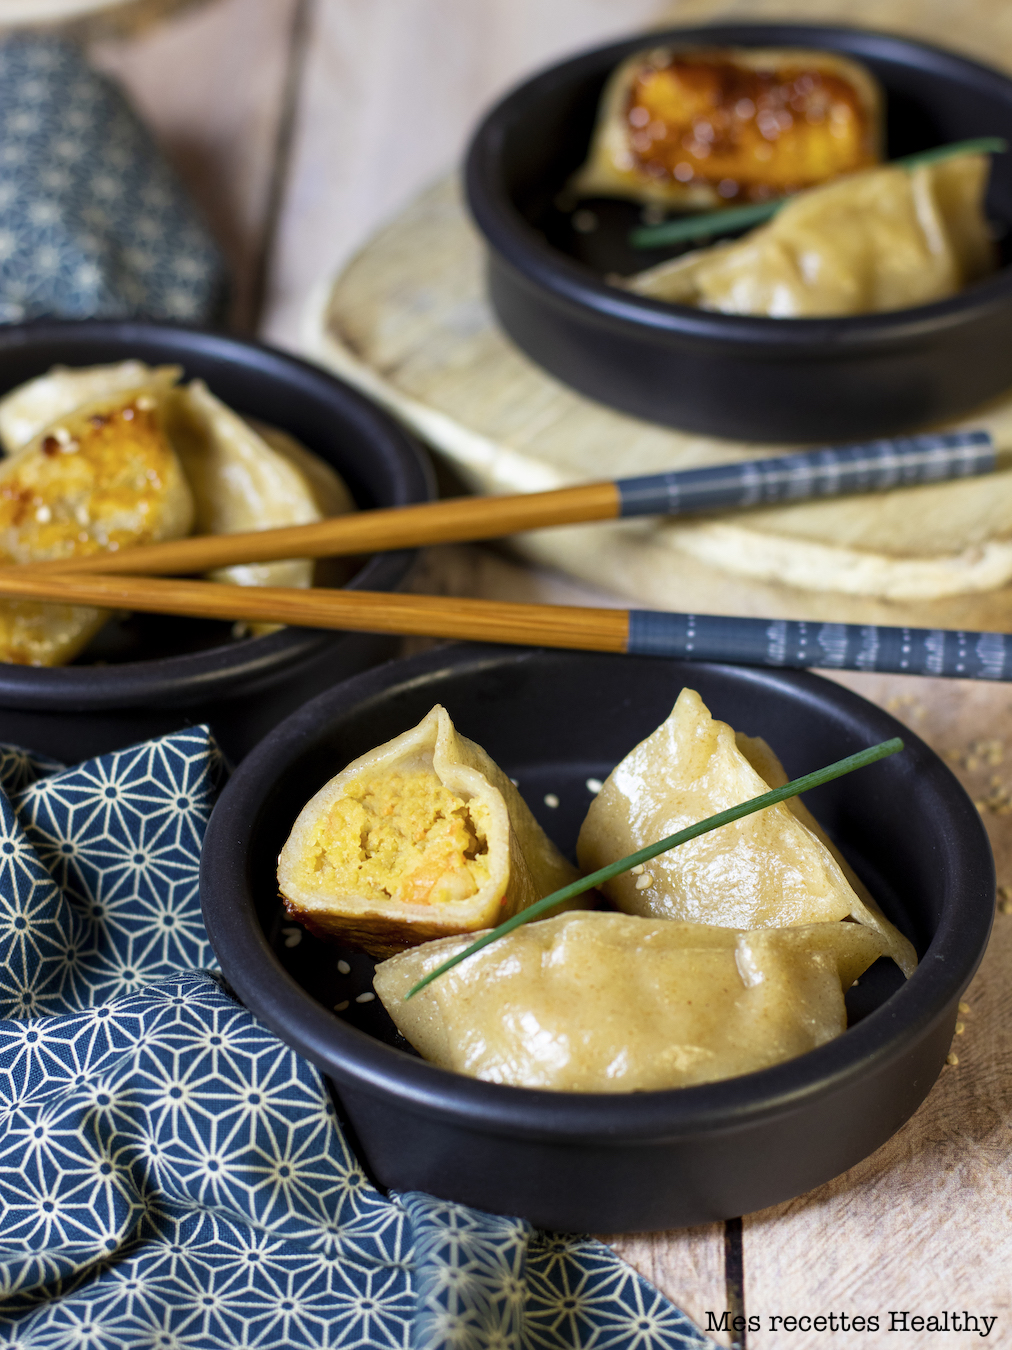 recette healthy-ravioli chinois-indien-fait maison-crevette-epice-coco